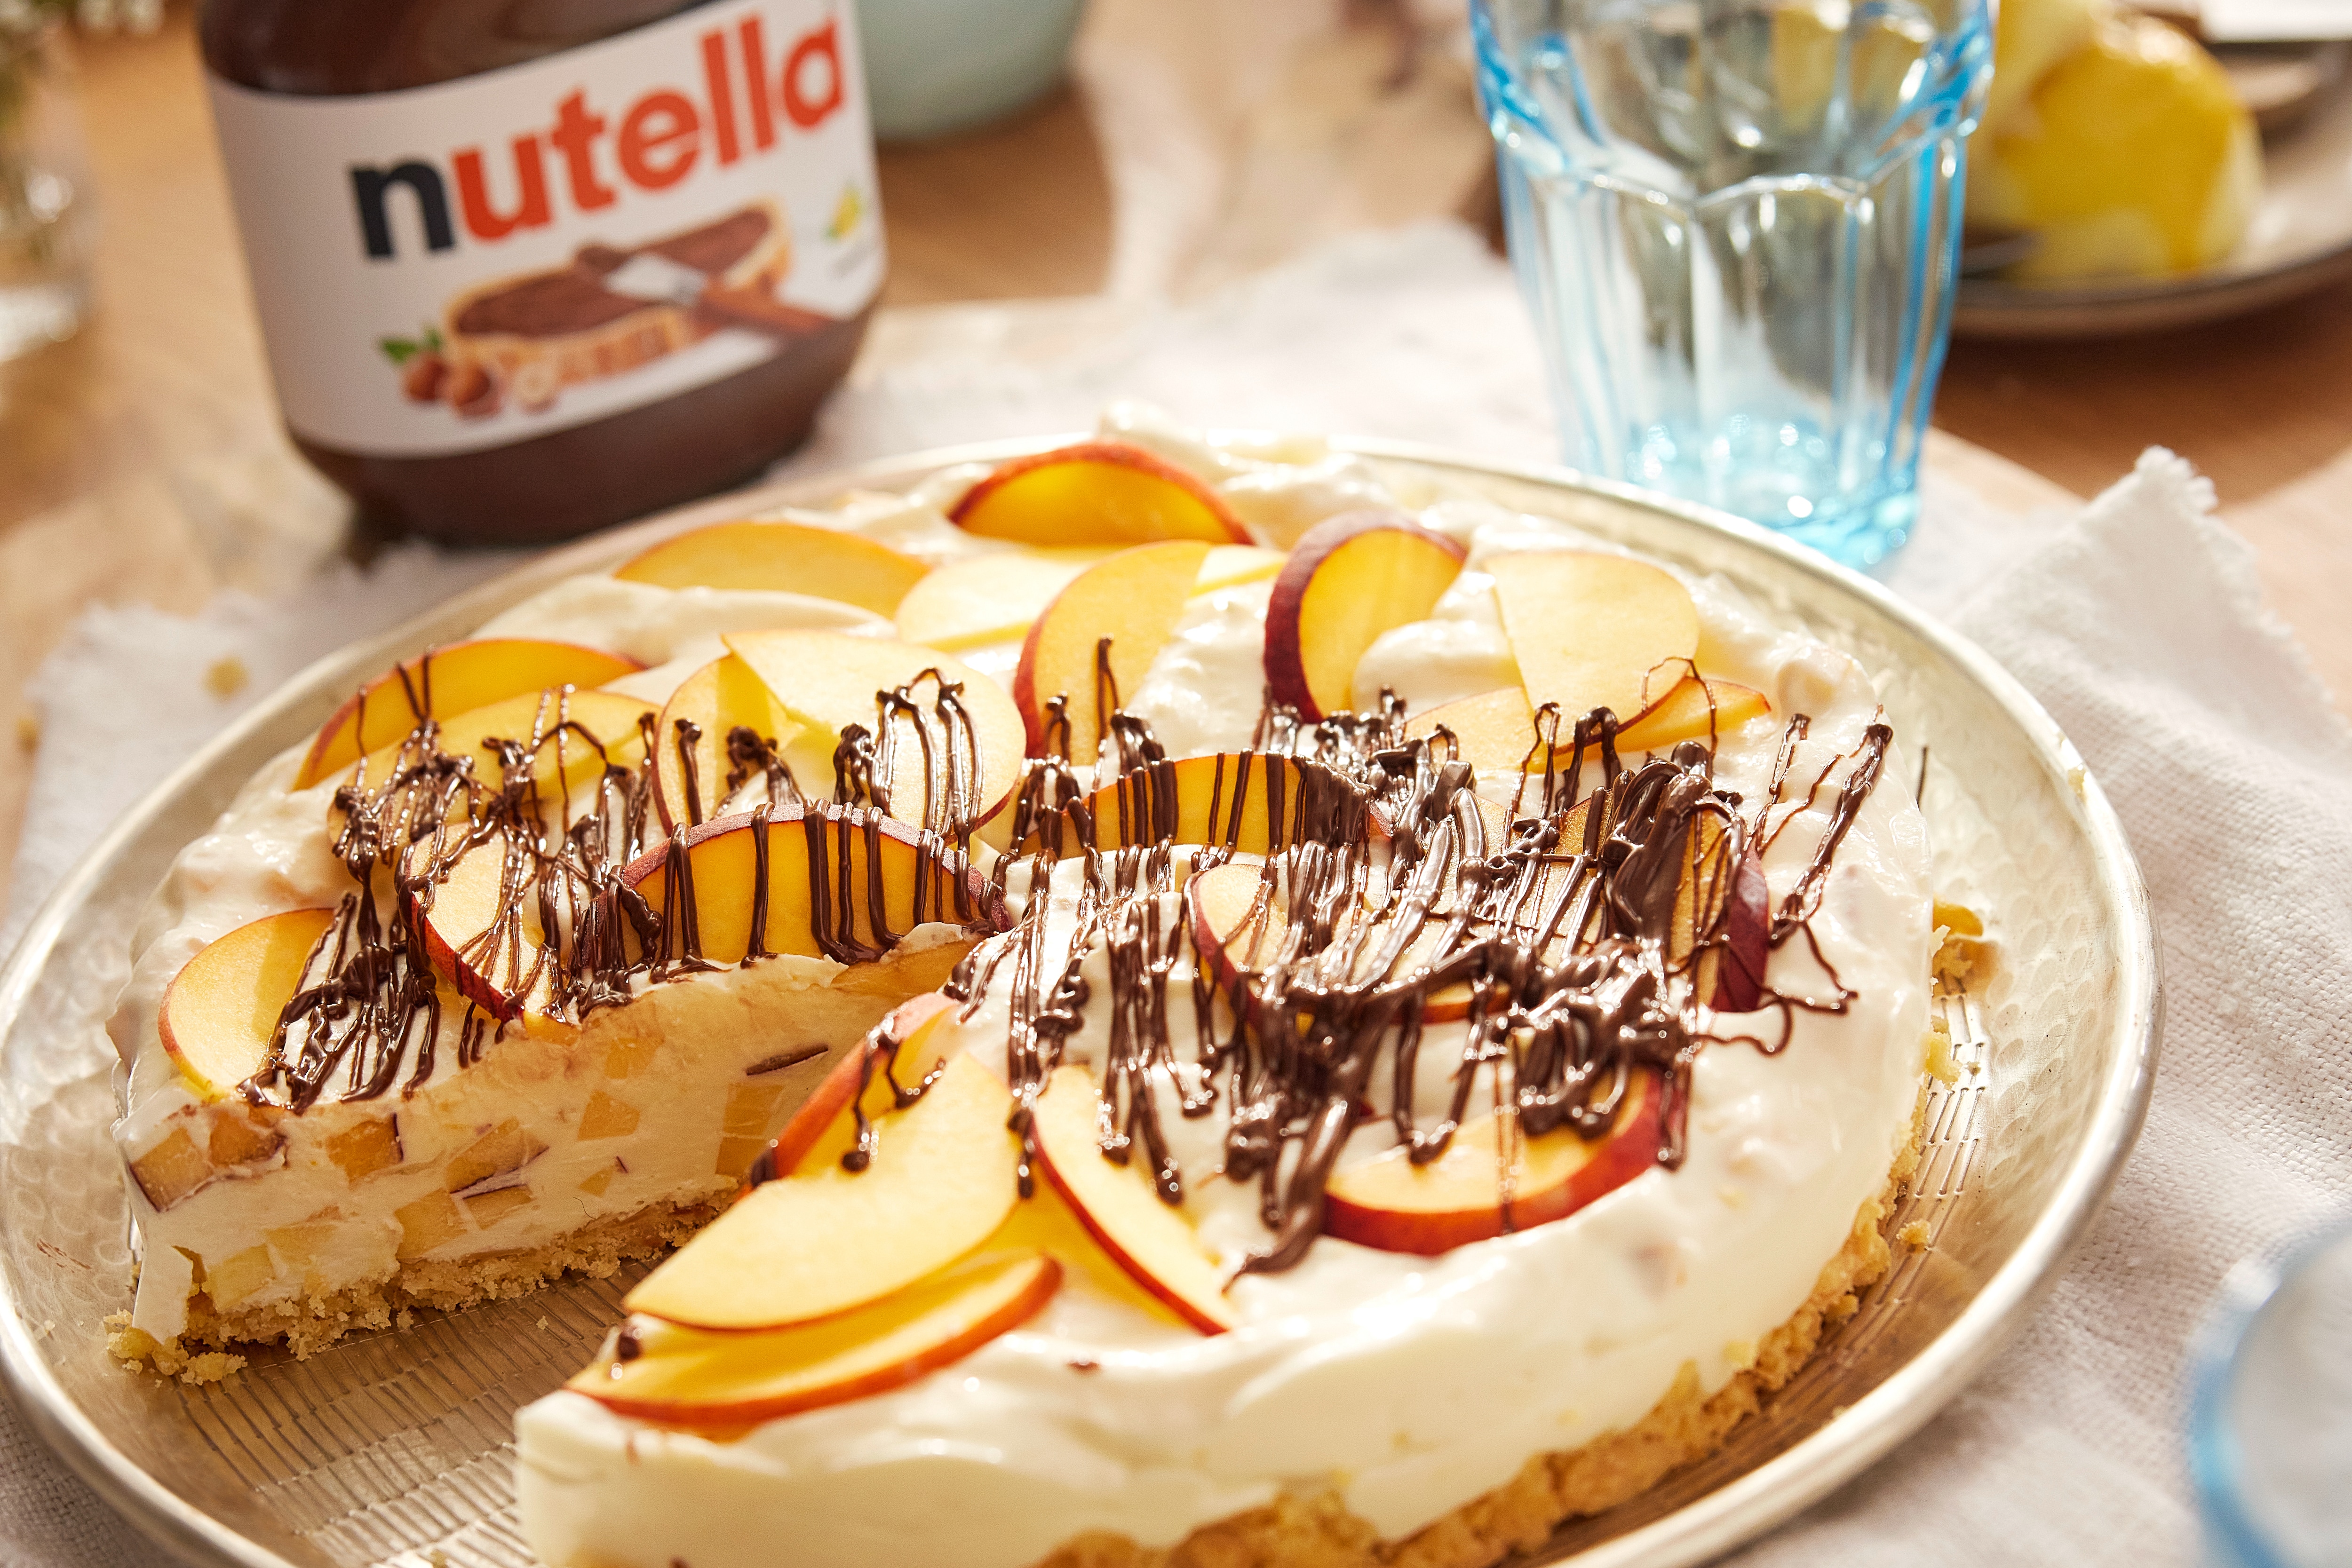 Pfirsich-Buttermilch-Torte mit nutella®